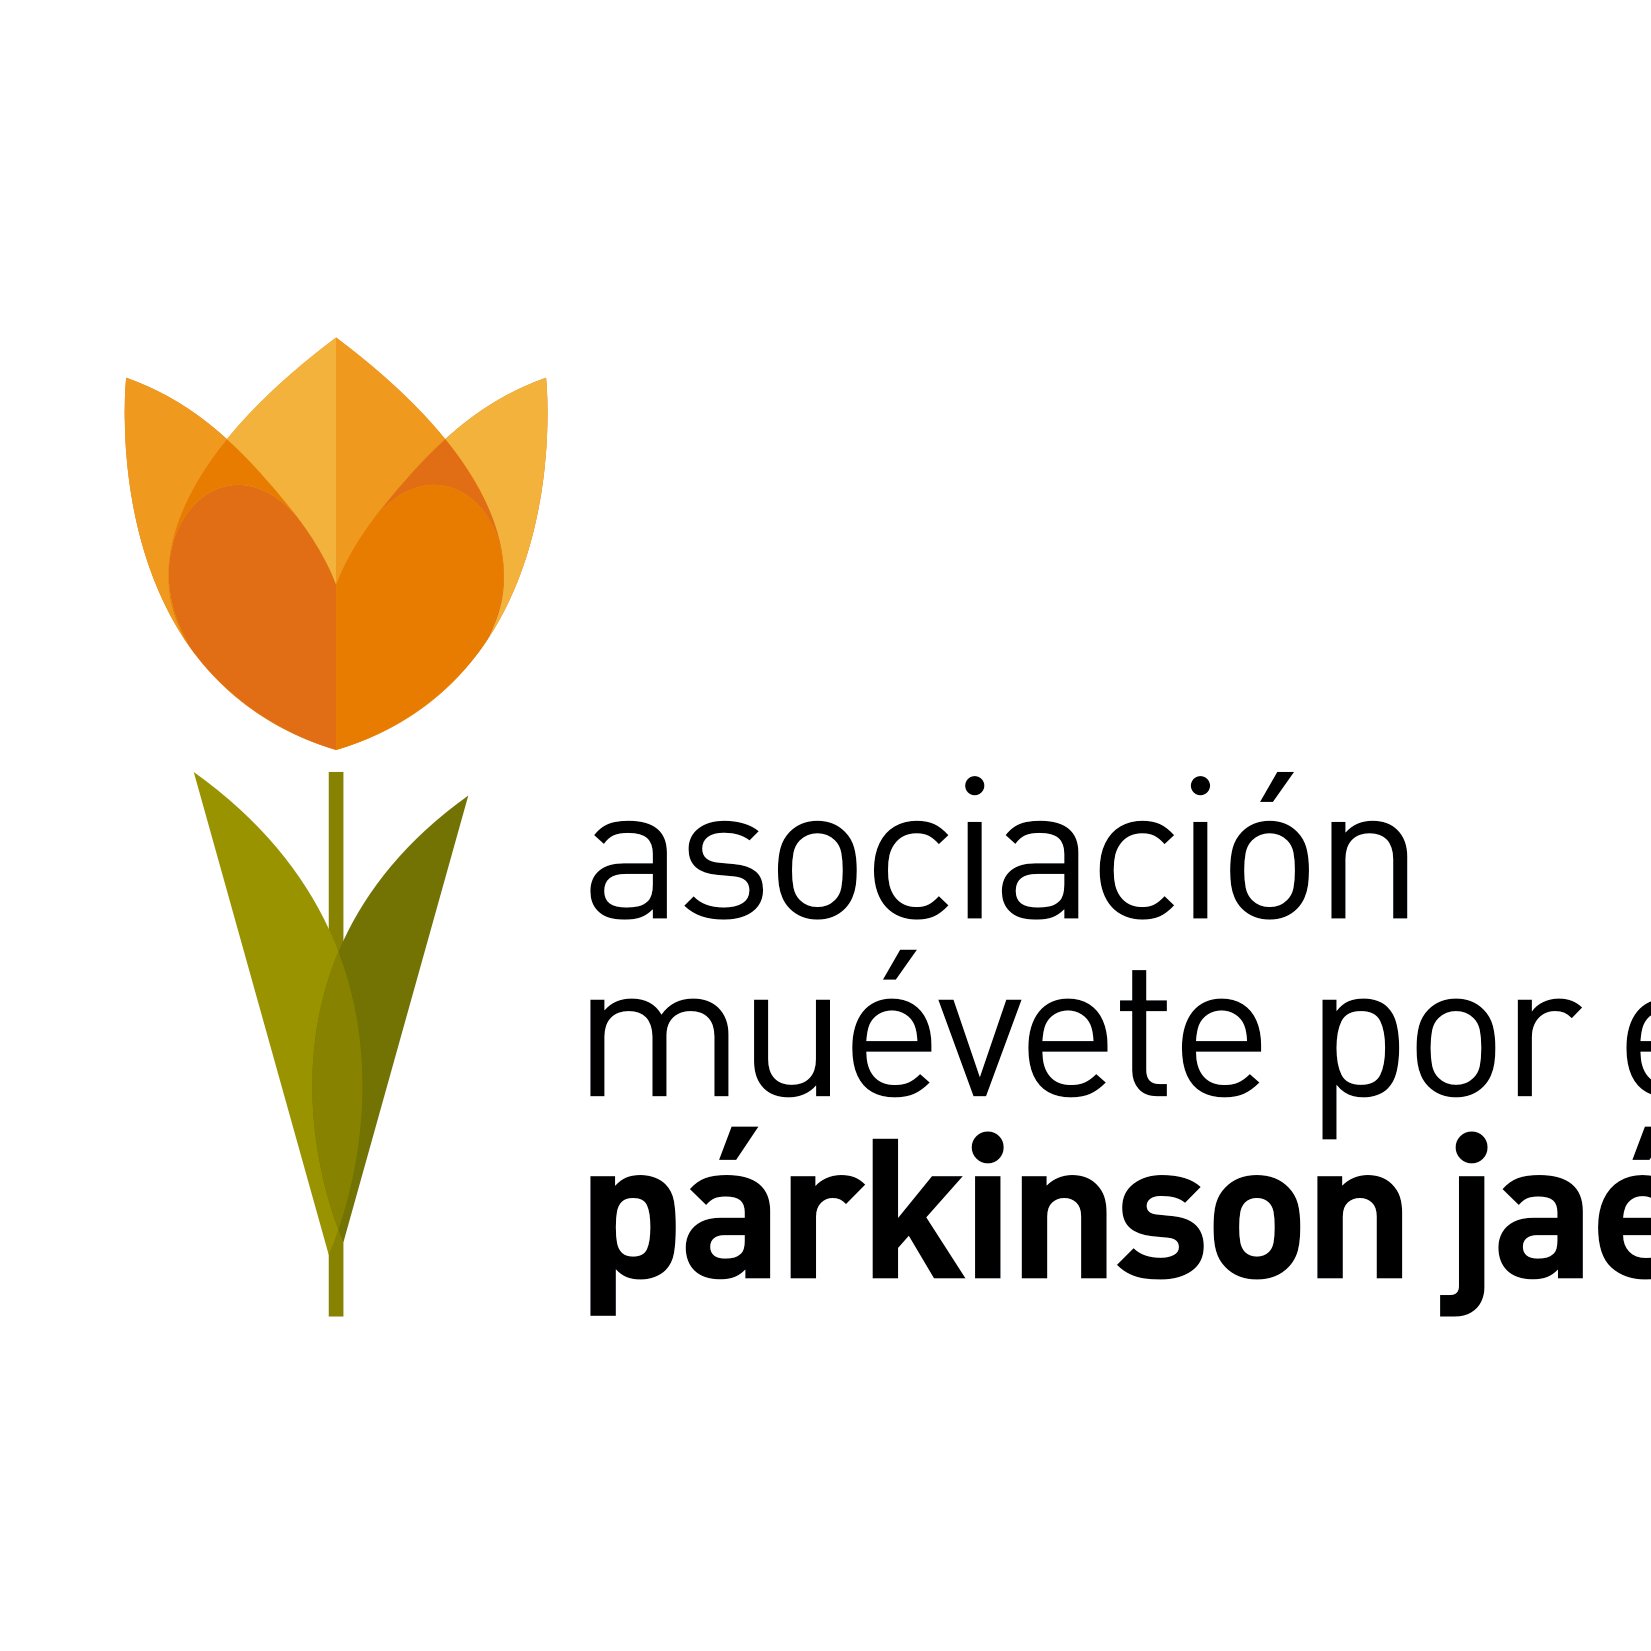 entidad sin ánimo de lucro que tiene por objetivo mejorar la calidad de personas con Parkinson y ayudar a familiares #parkinson